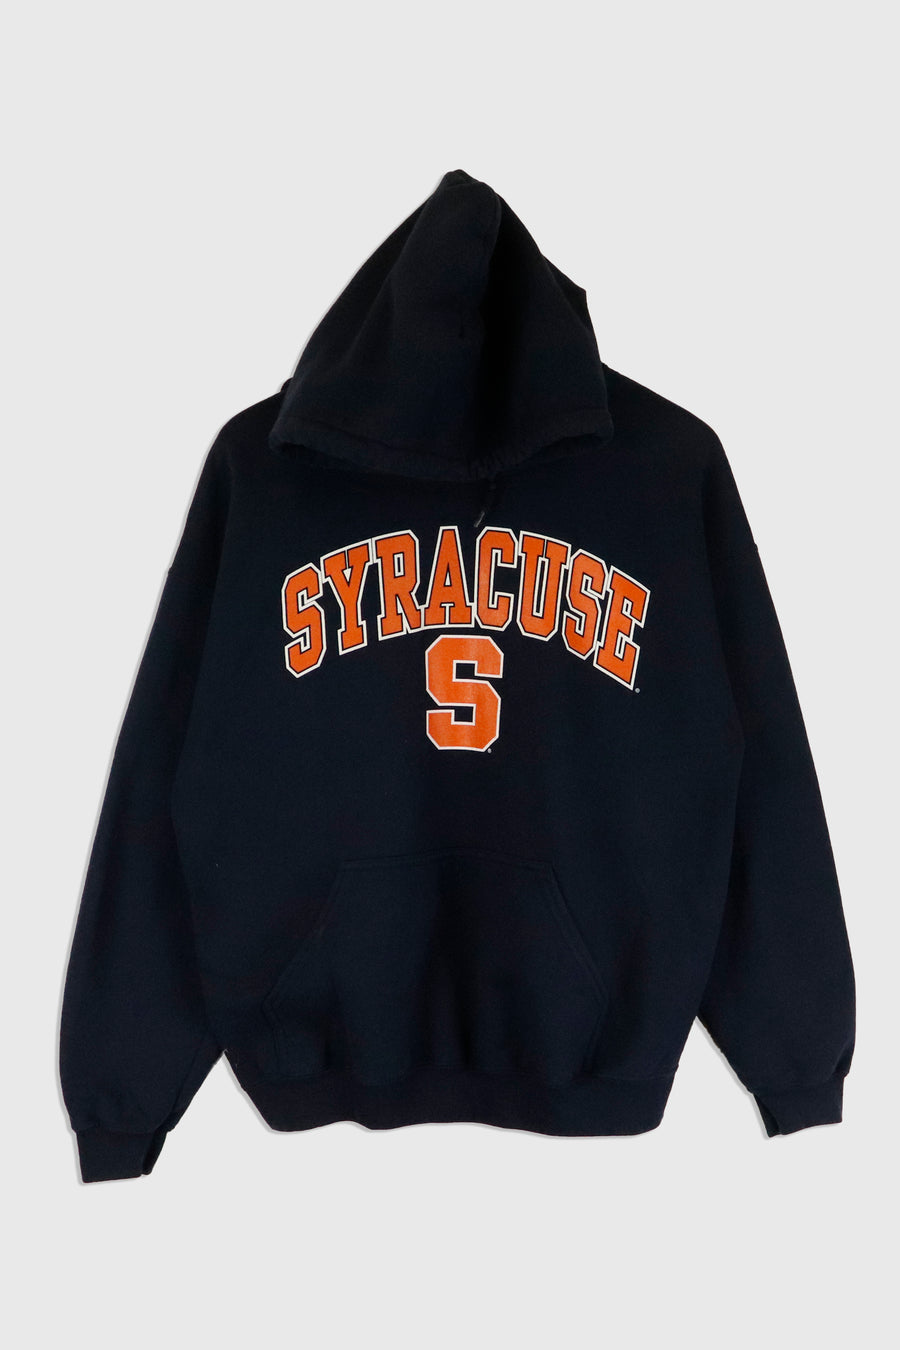 Vintage Hooded Syracuse Vinyl Letters Sweatshirt Sz L